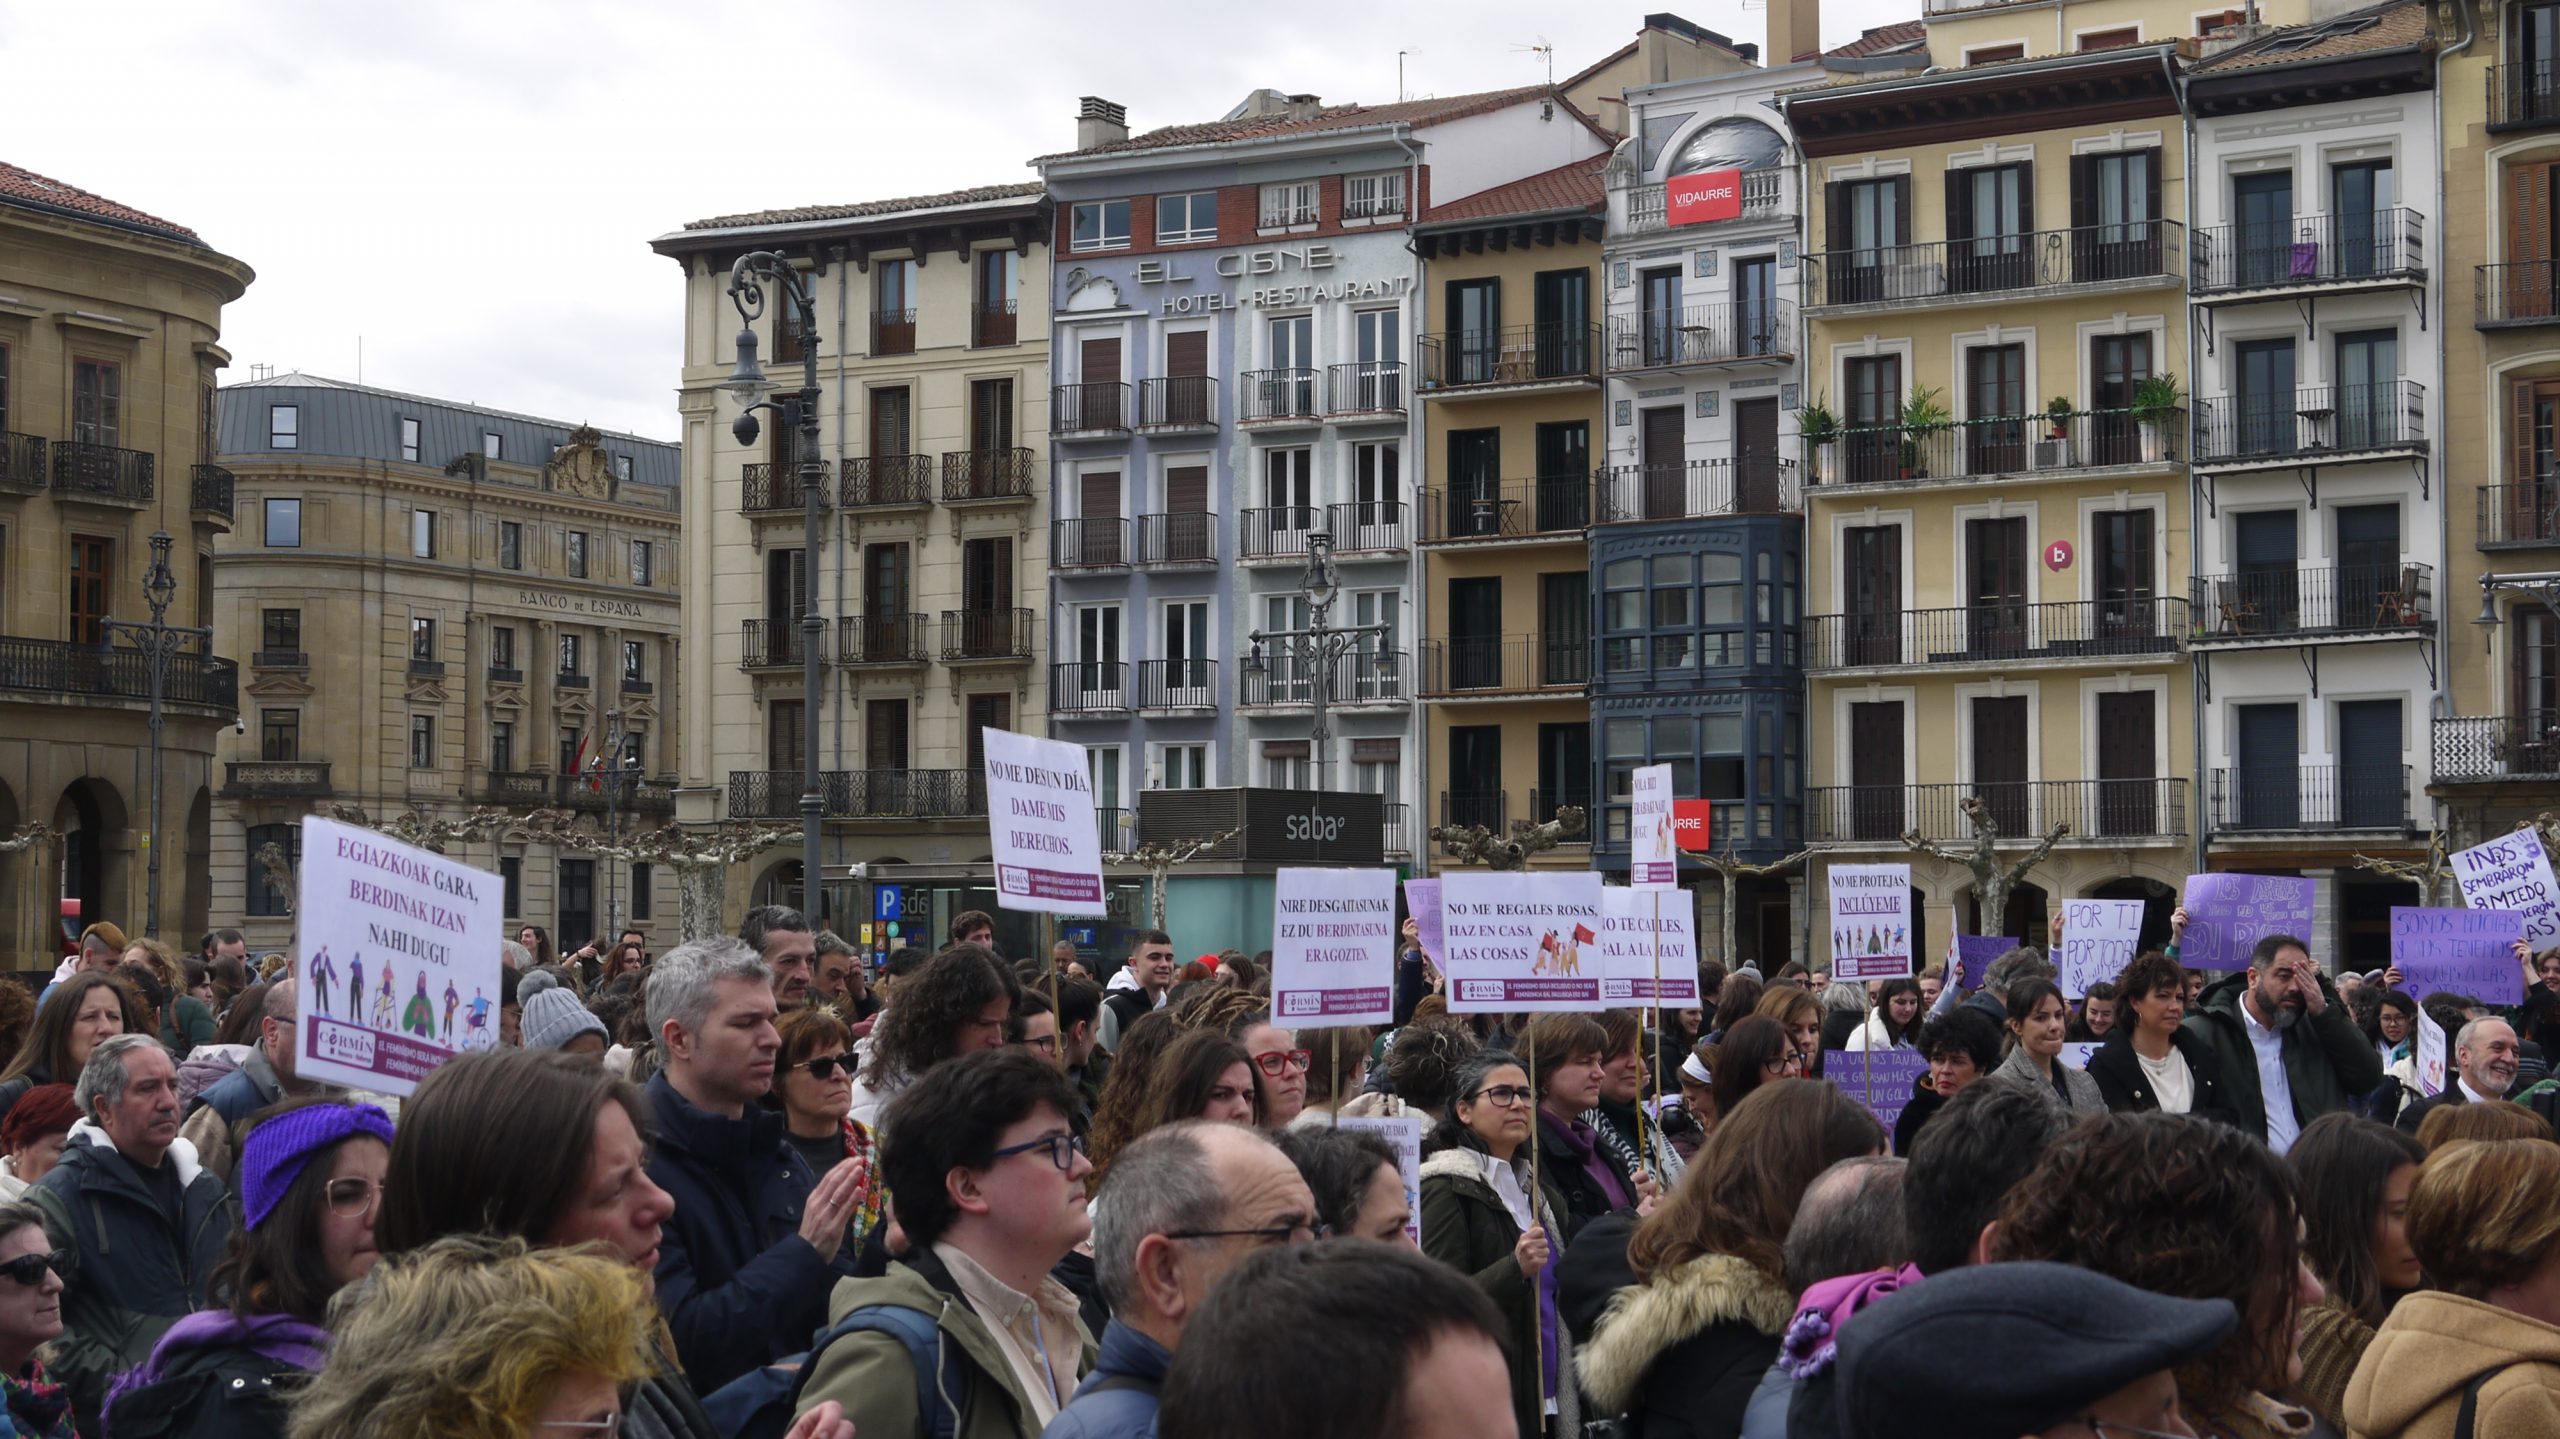 Mucha gente en la Plaza del Castillo. Llevan pancartas con diversos lemas feministas e inclusivos.